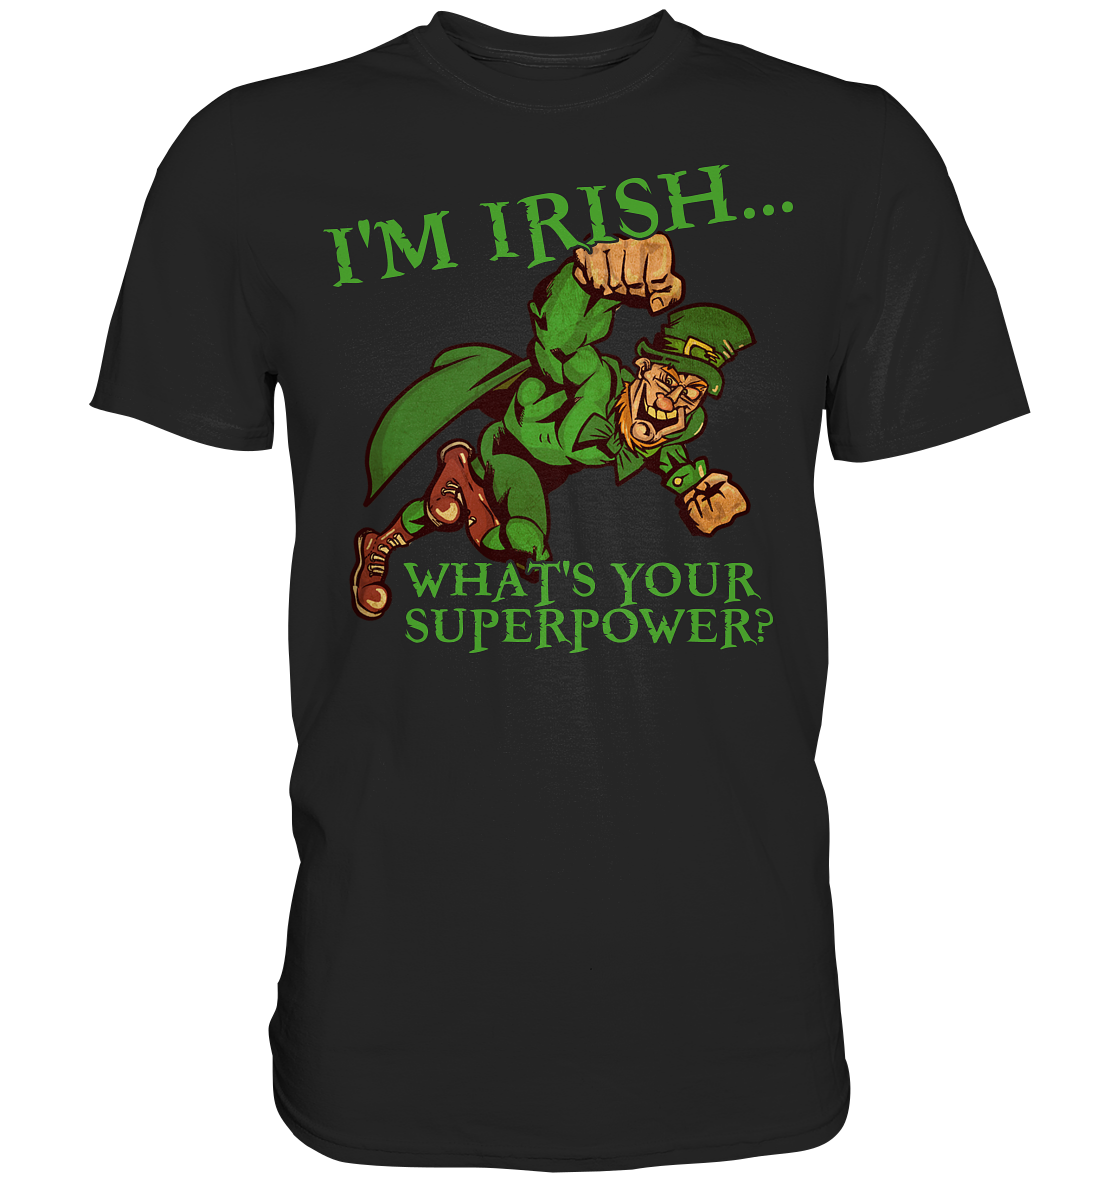 I'm Irish "What's Your Superpower?" - Premium Shirt